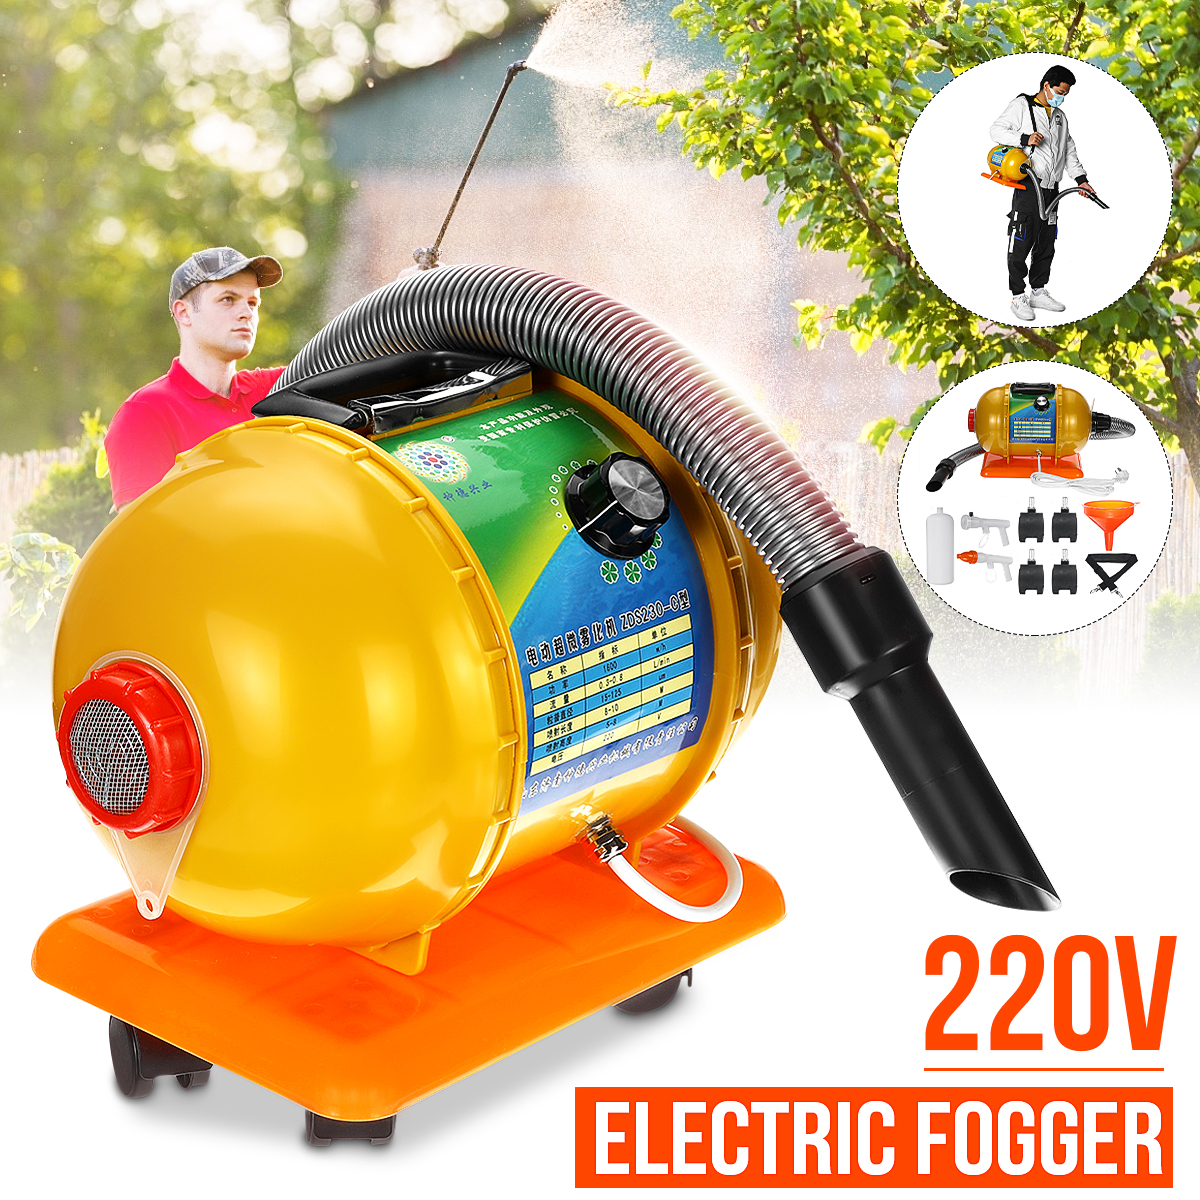 Electric-Fogger-ULV-Sprayer-Mosquito-Killer-Farming-Office--Industrial-220V-1686769-1